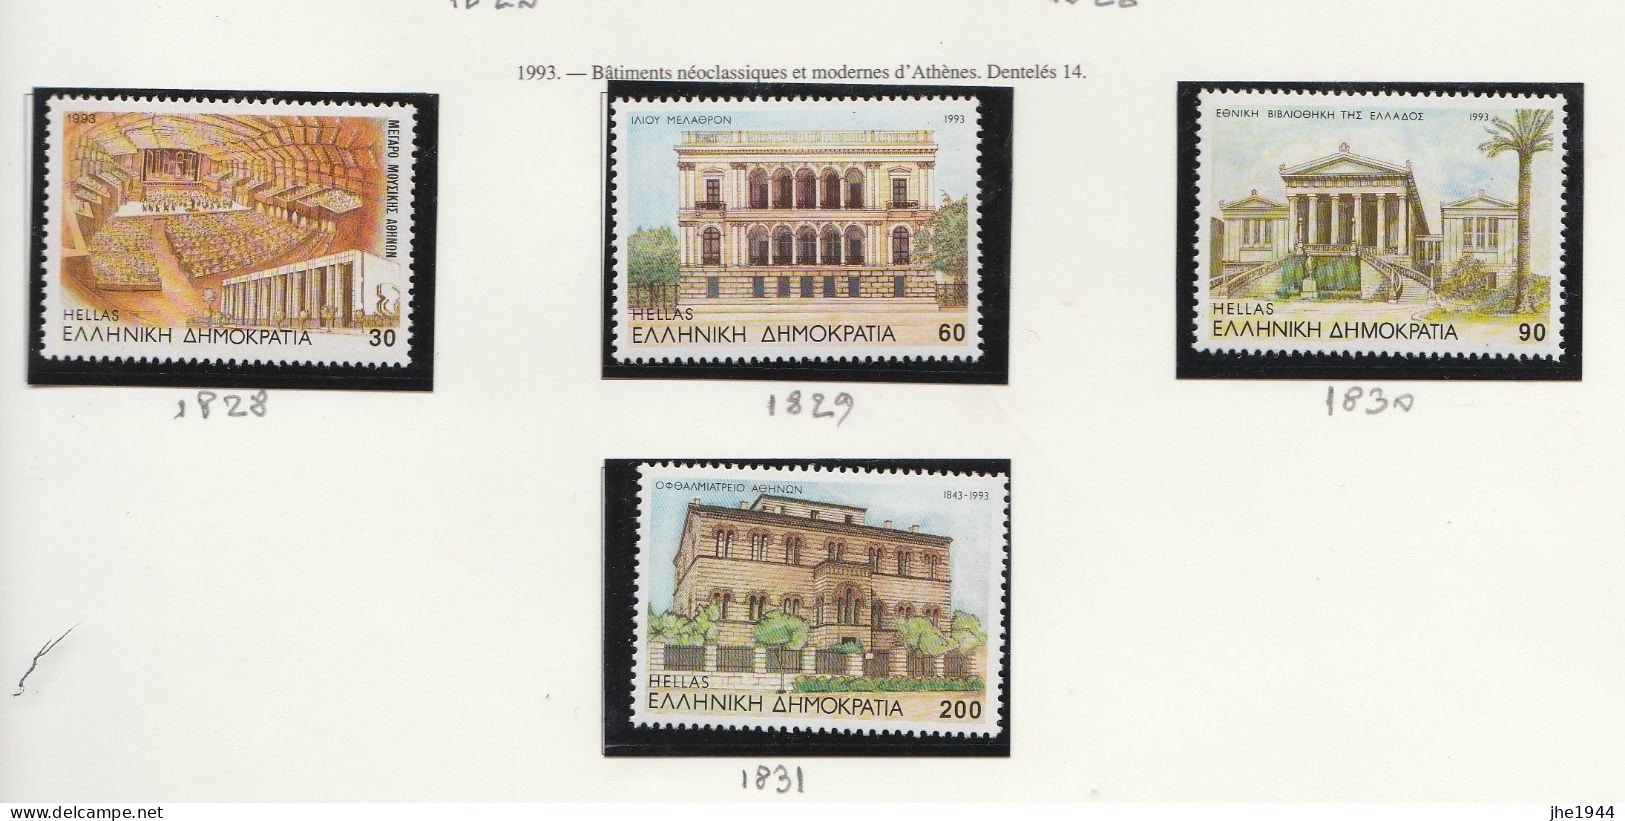 Grece N° 1828 à 1831** Serie Edifices Ecclésiastiques Et Modernes à Athenes - Unused Stamps